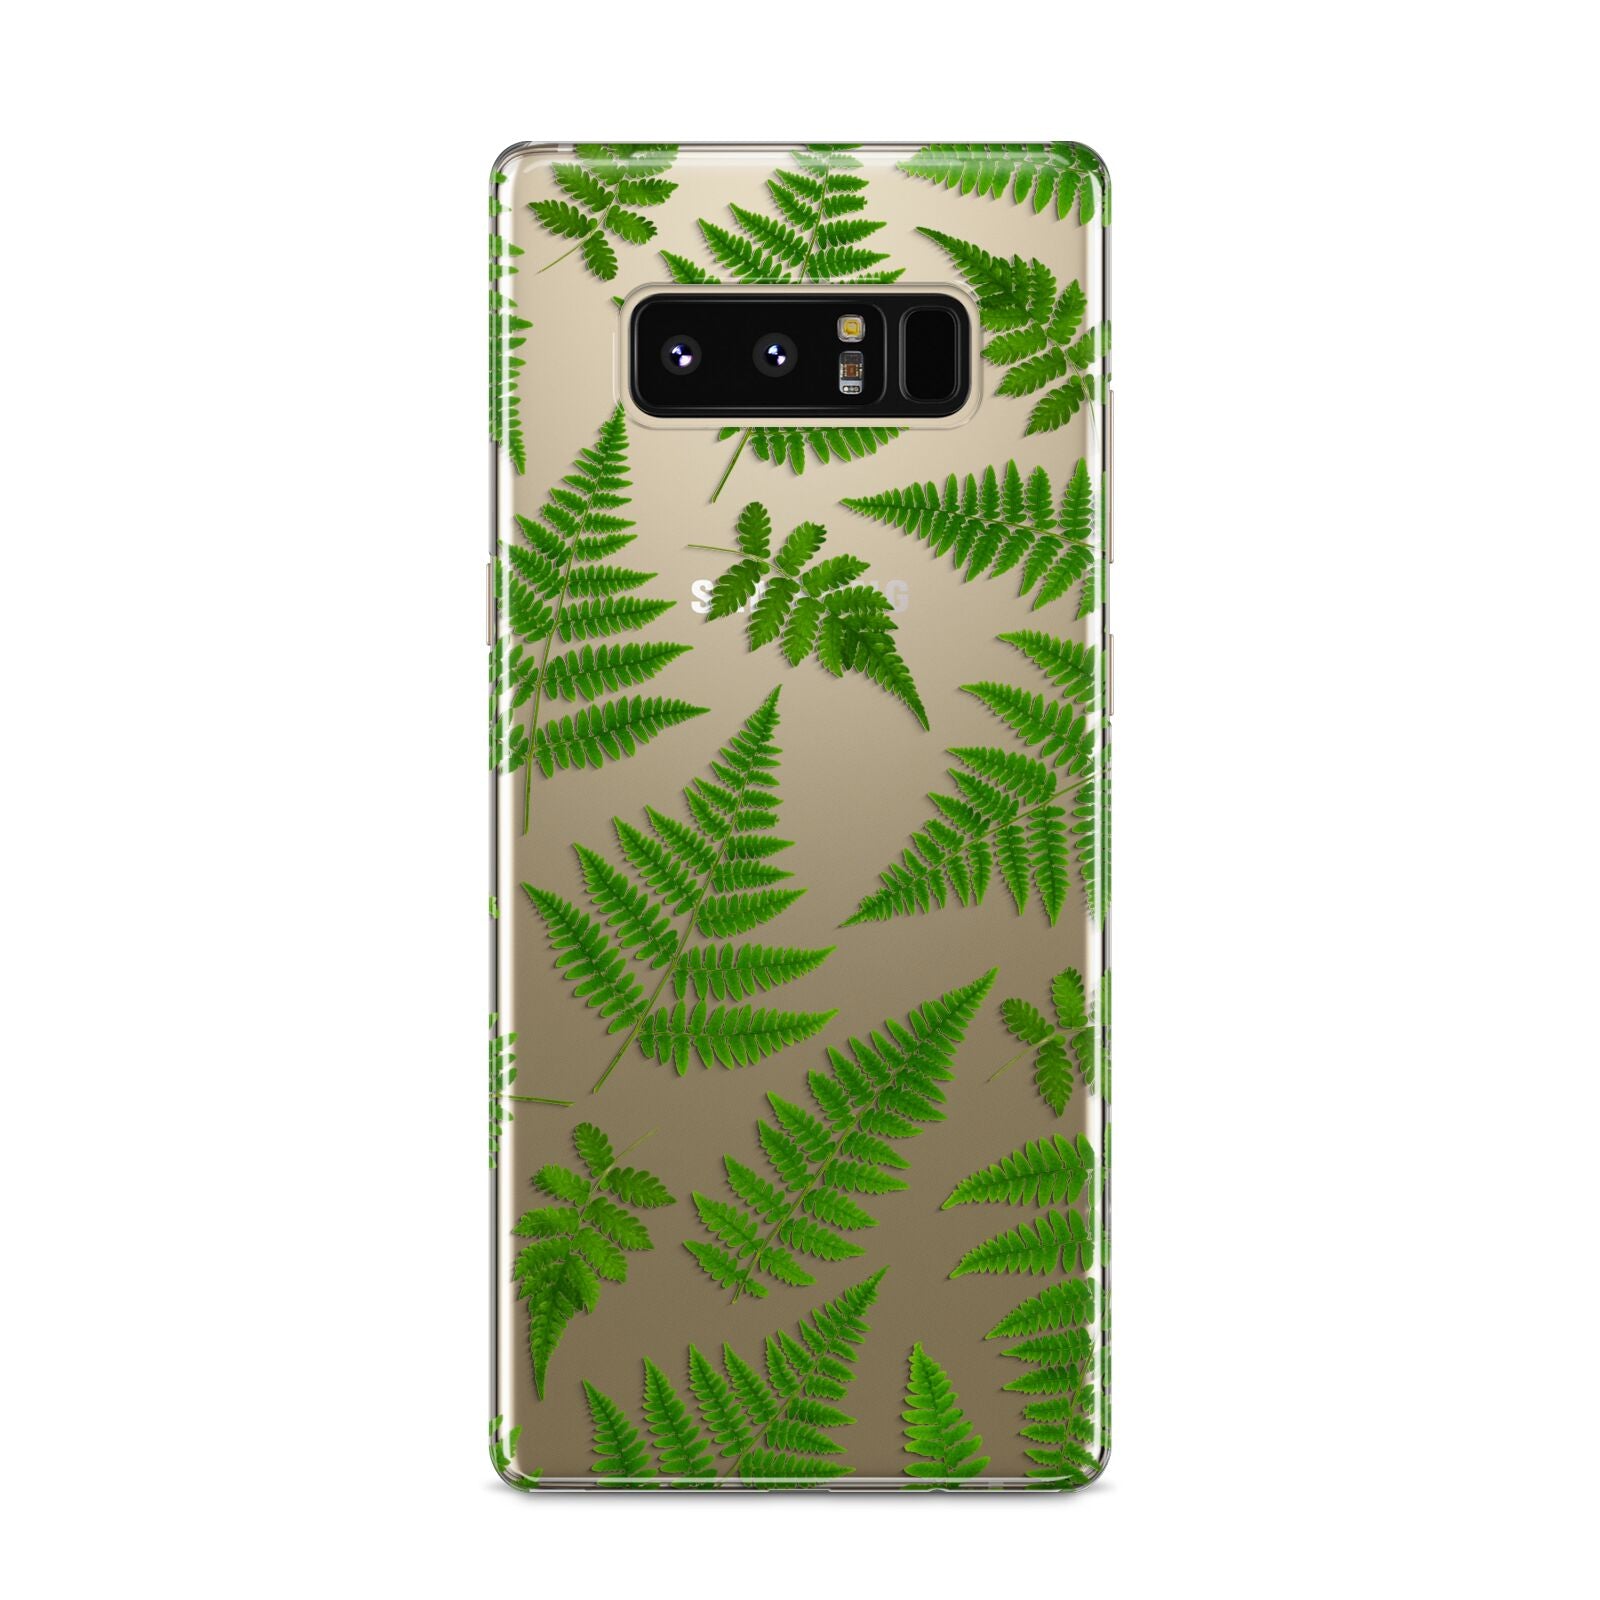 Fern Leaf Samsung Galaxy S8 Case